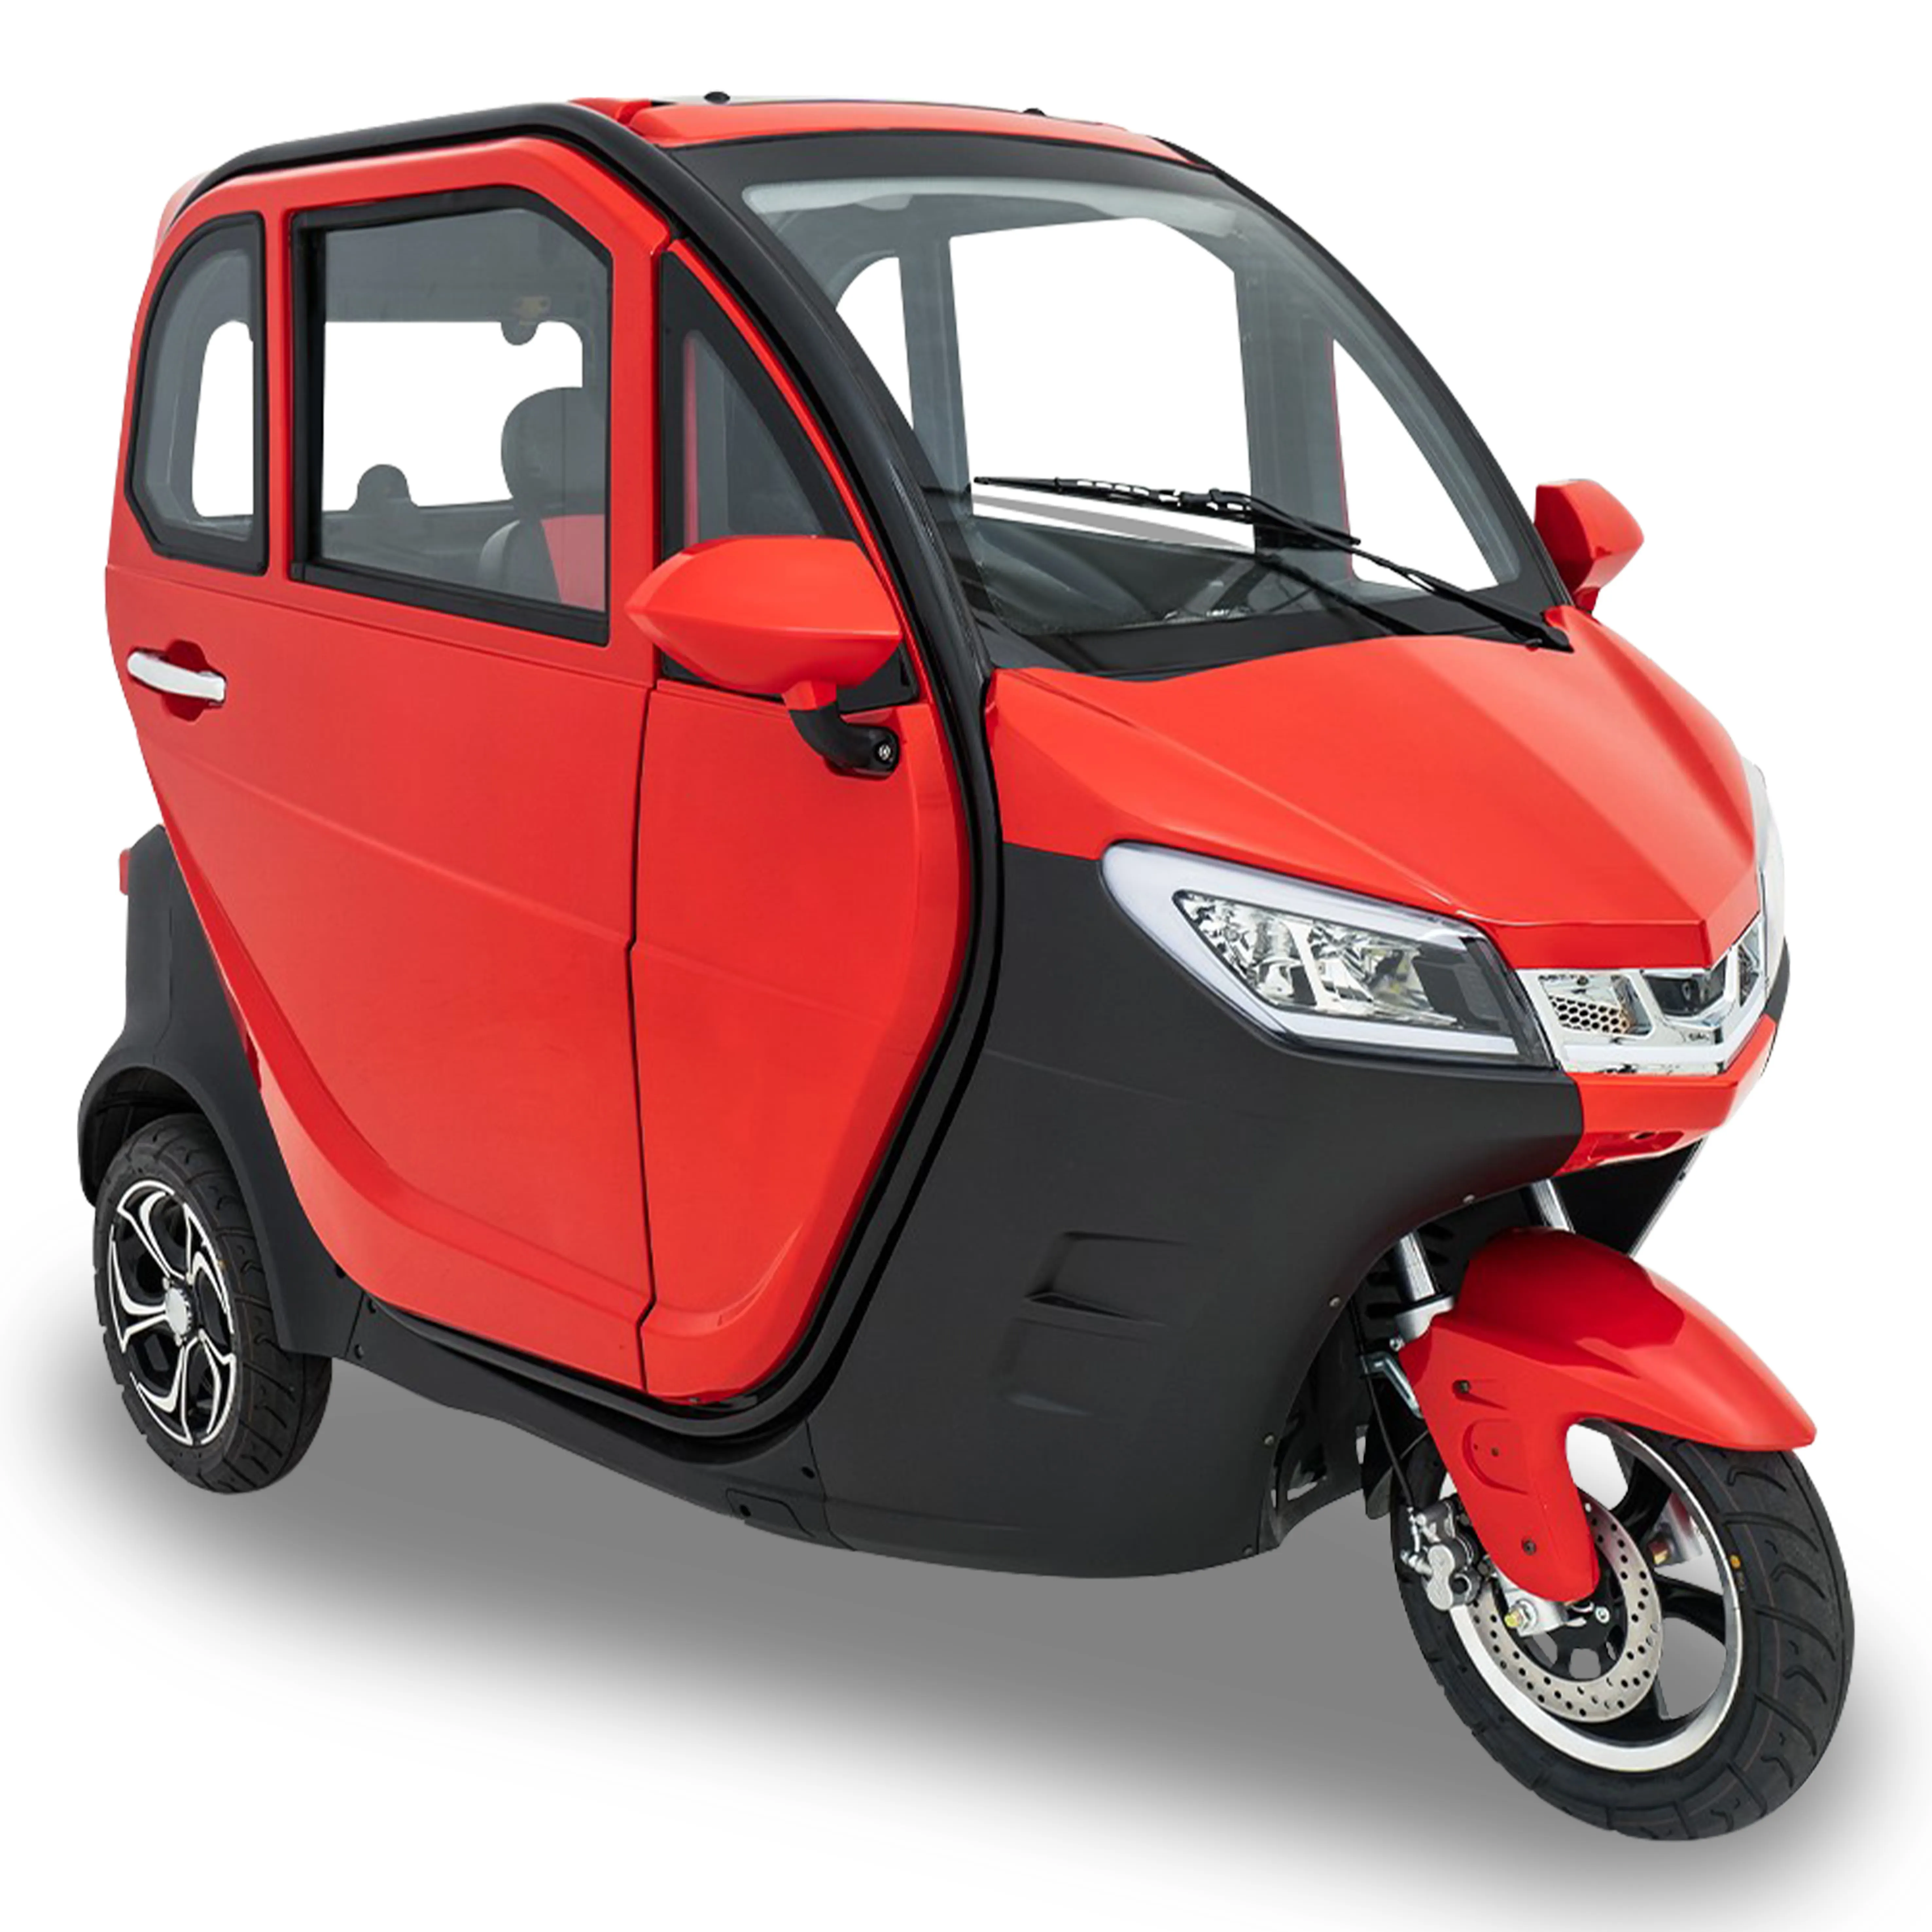 Nouveau Tricycle à moteur à essence entièrement fermé pour transporter des passagers, trois roues, moto pour Taxi